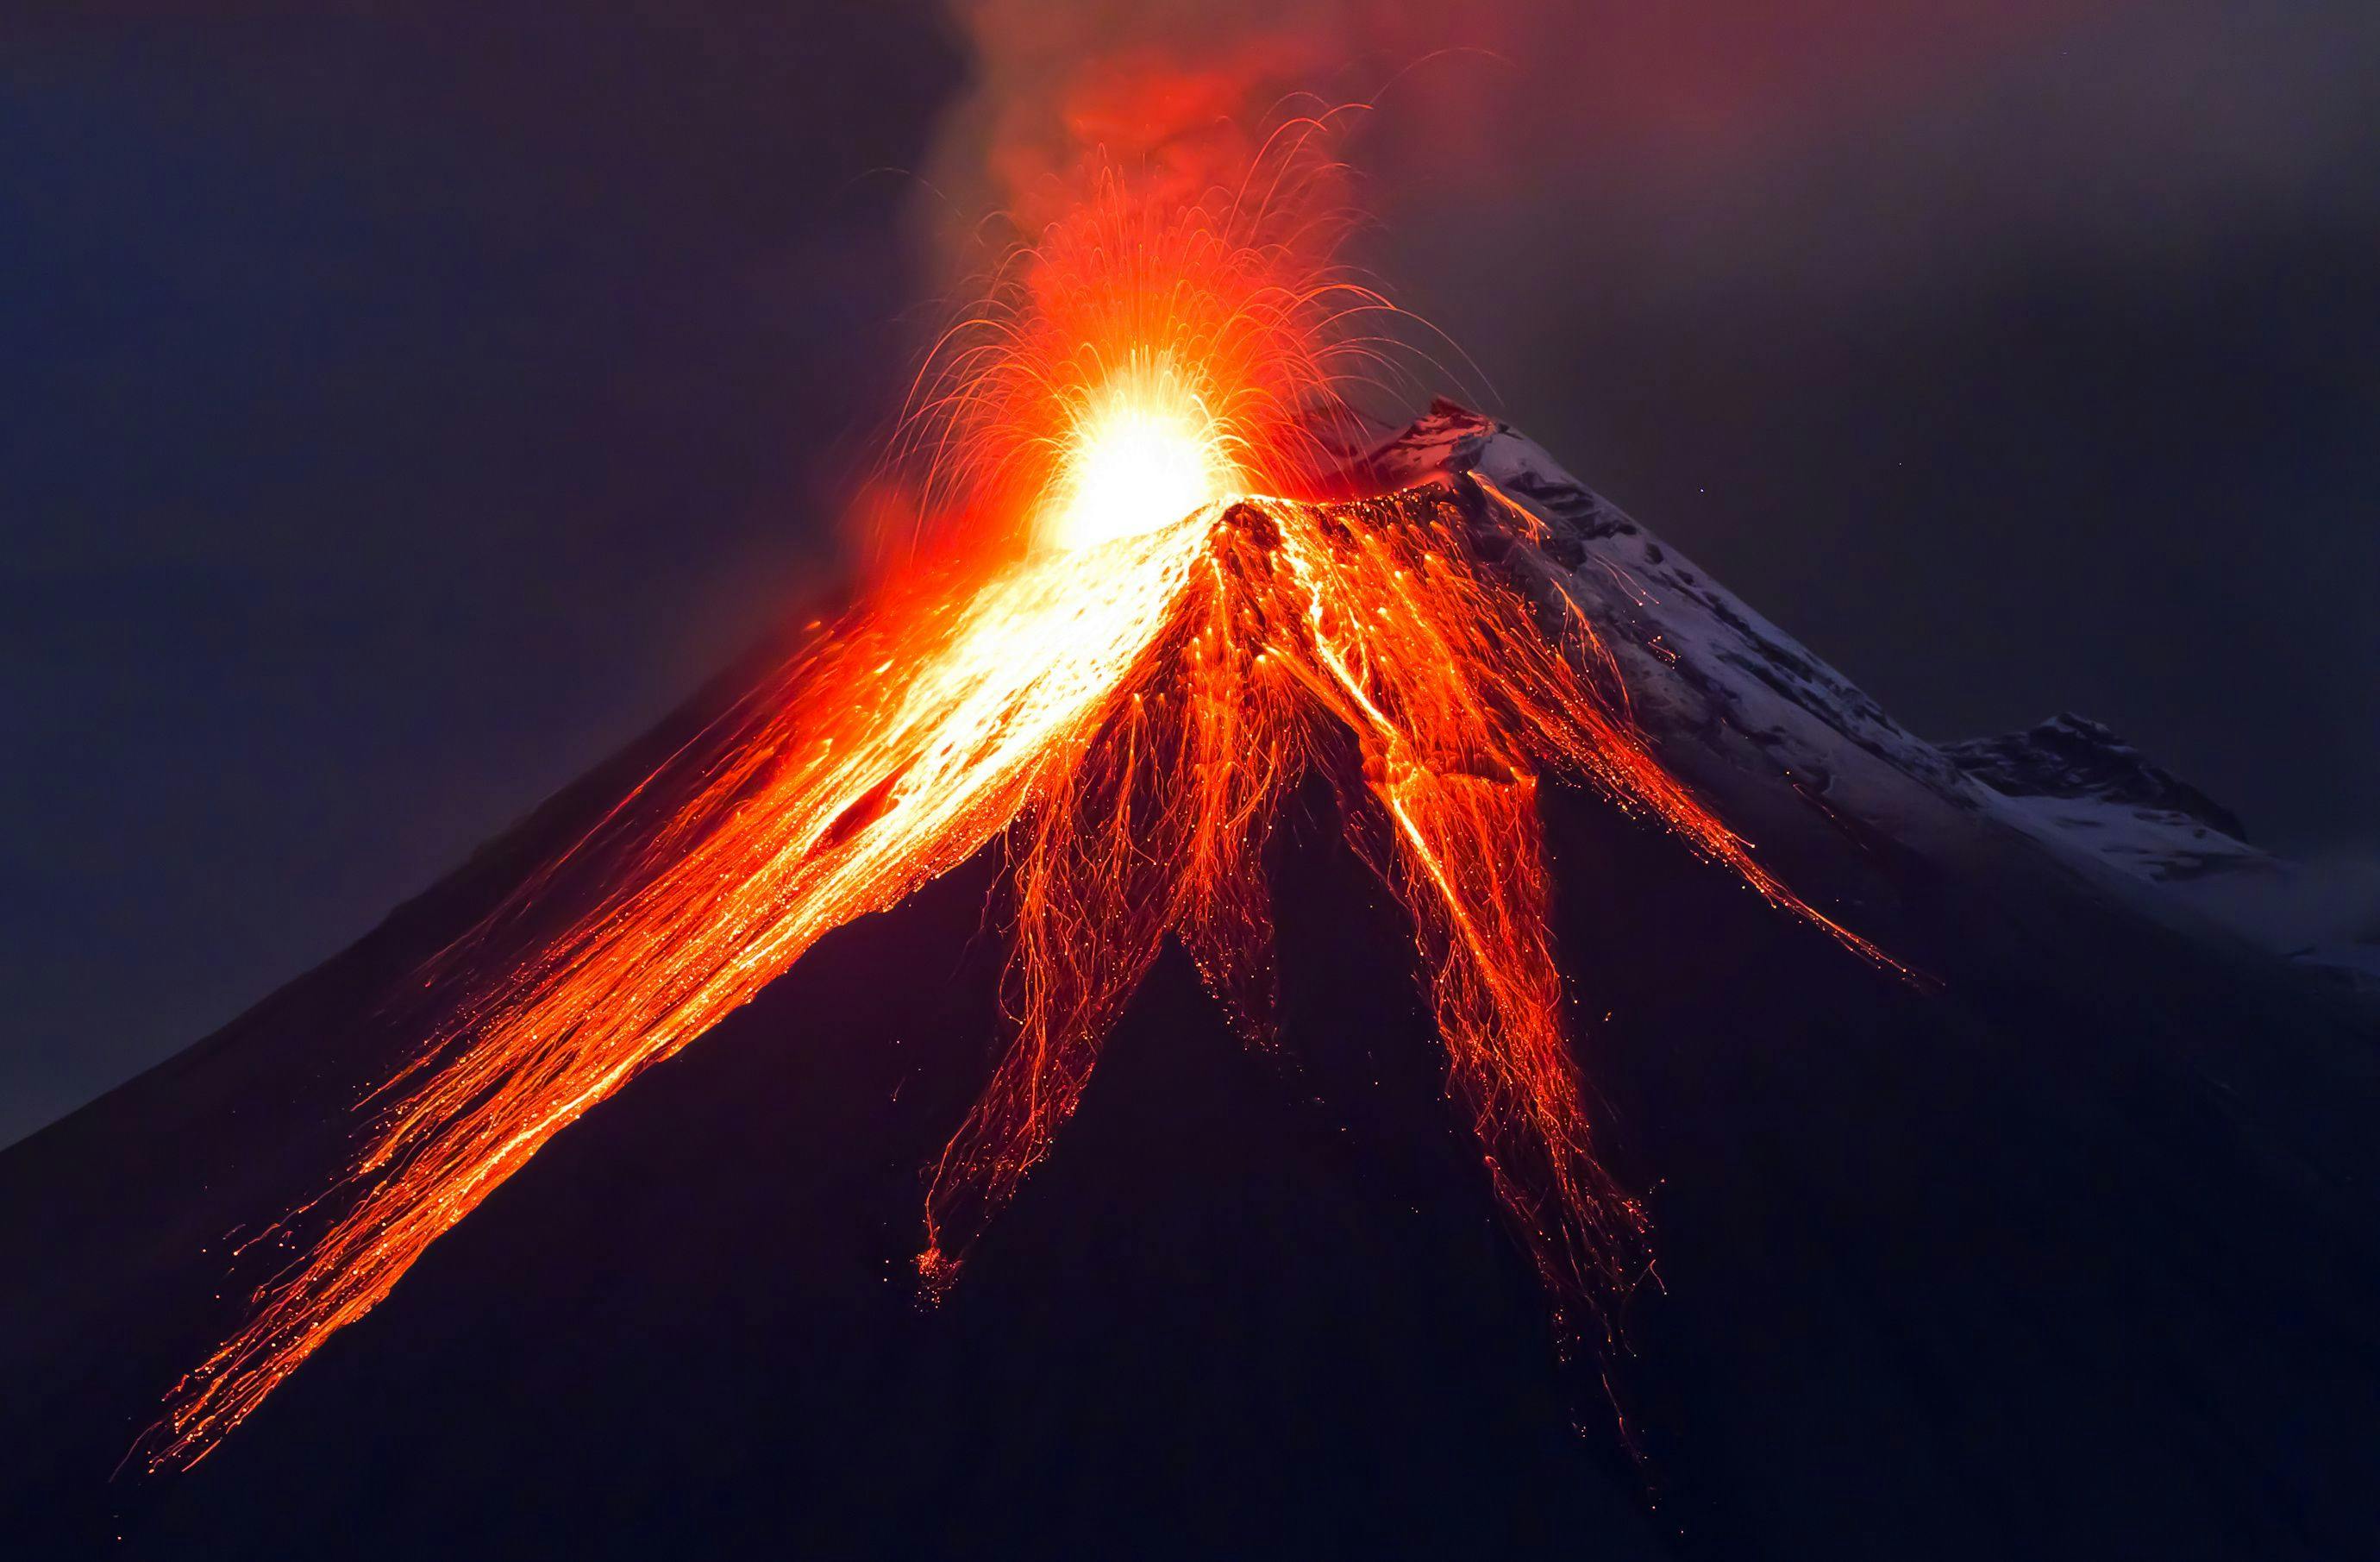 Close up volcano eruption (Tungurahua) | Image Credit: © Fotos 593 - stock.adobe.com